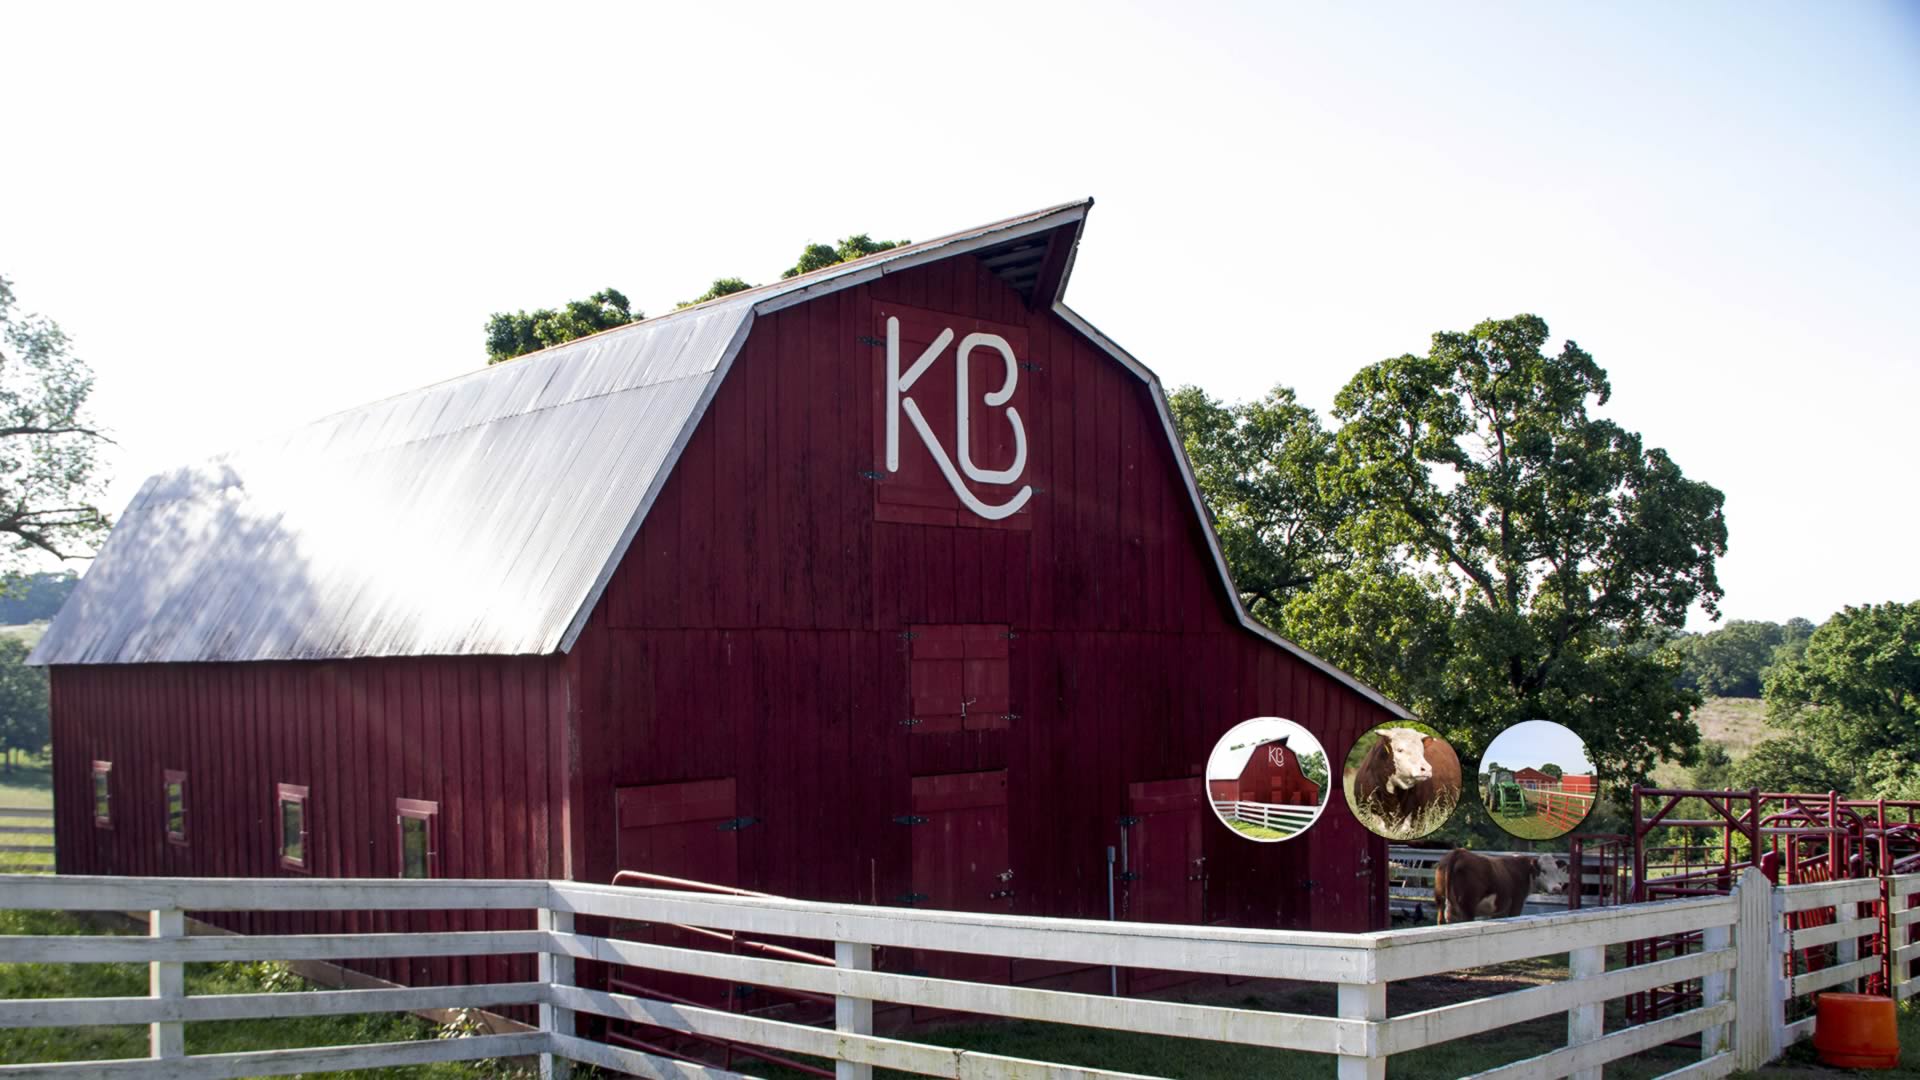 KB Herefords Barn in Missouri